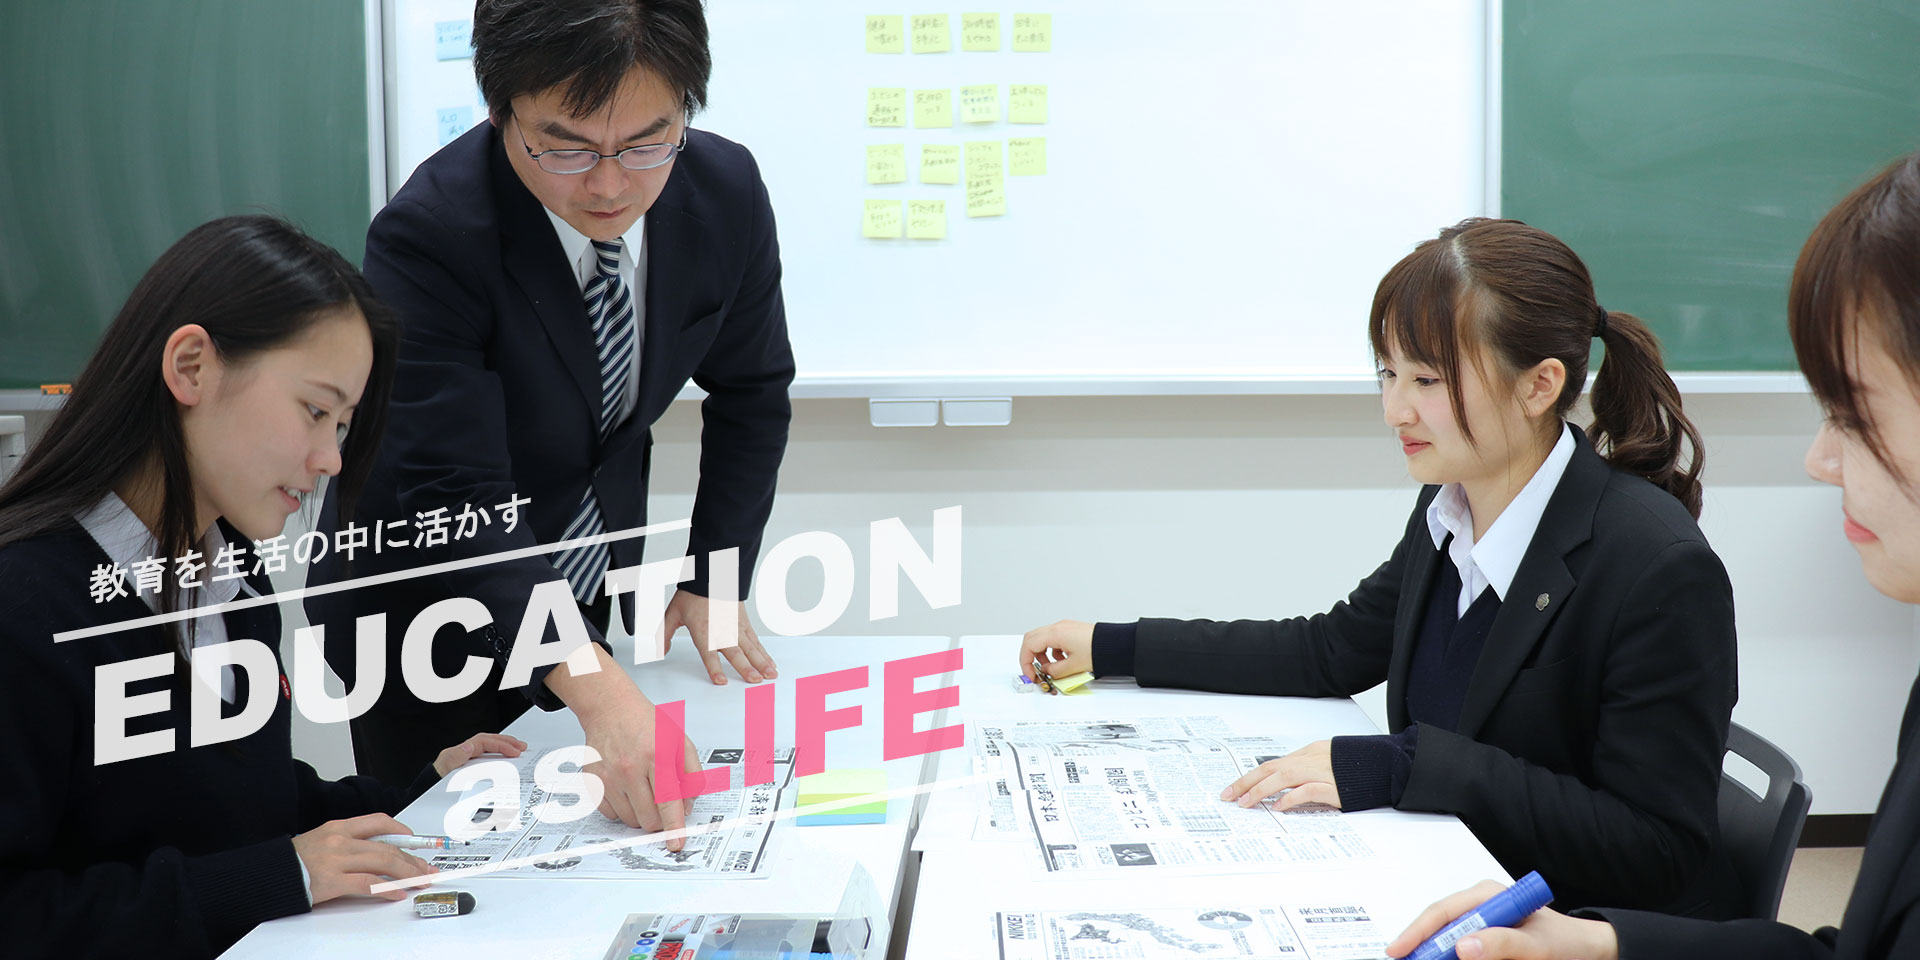 人生としての教育 EDUCATION as LIFE